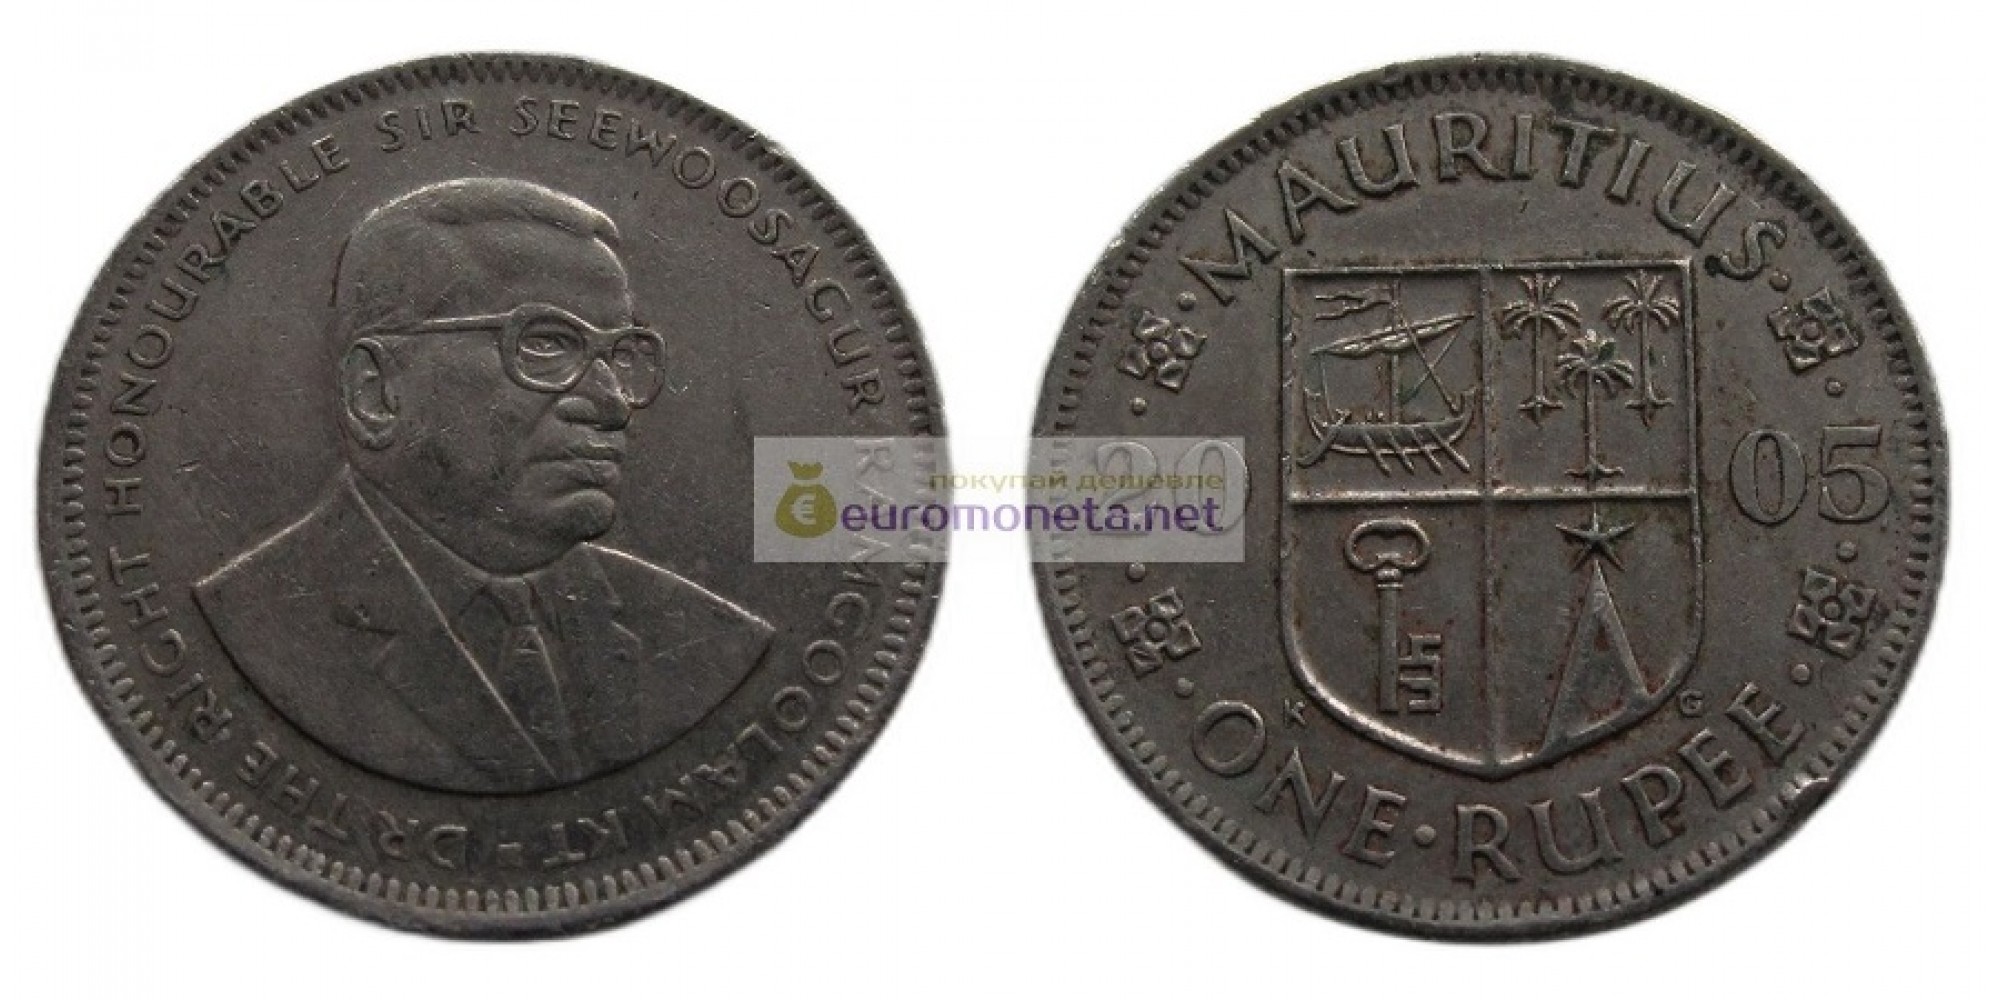 Республика Маврикий 1 рупия 2005 год. Сивусагур Рамгулам